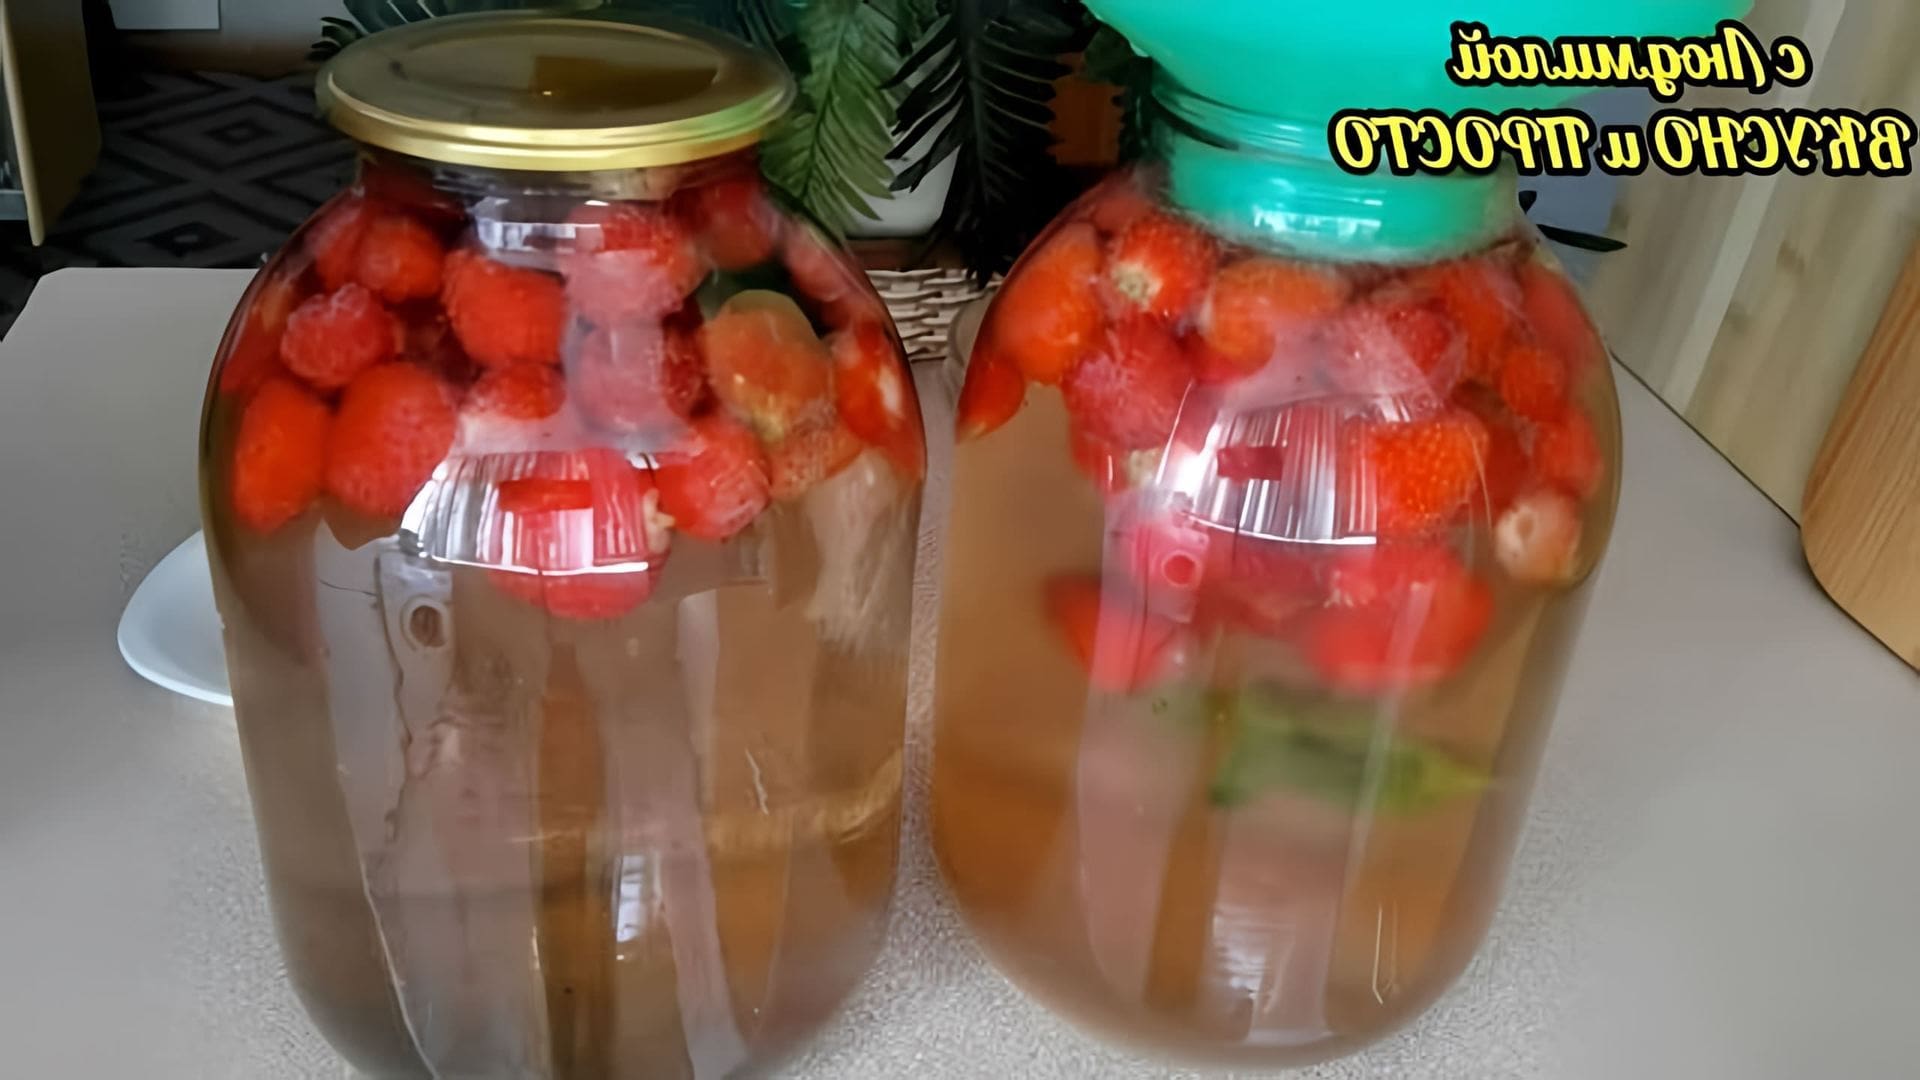 В этом видео демонстрируется процесс приготовления компота из ягод на зиму без стерилизации и варки